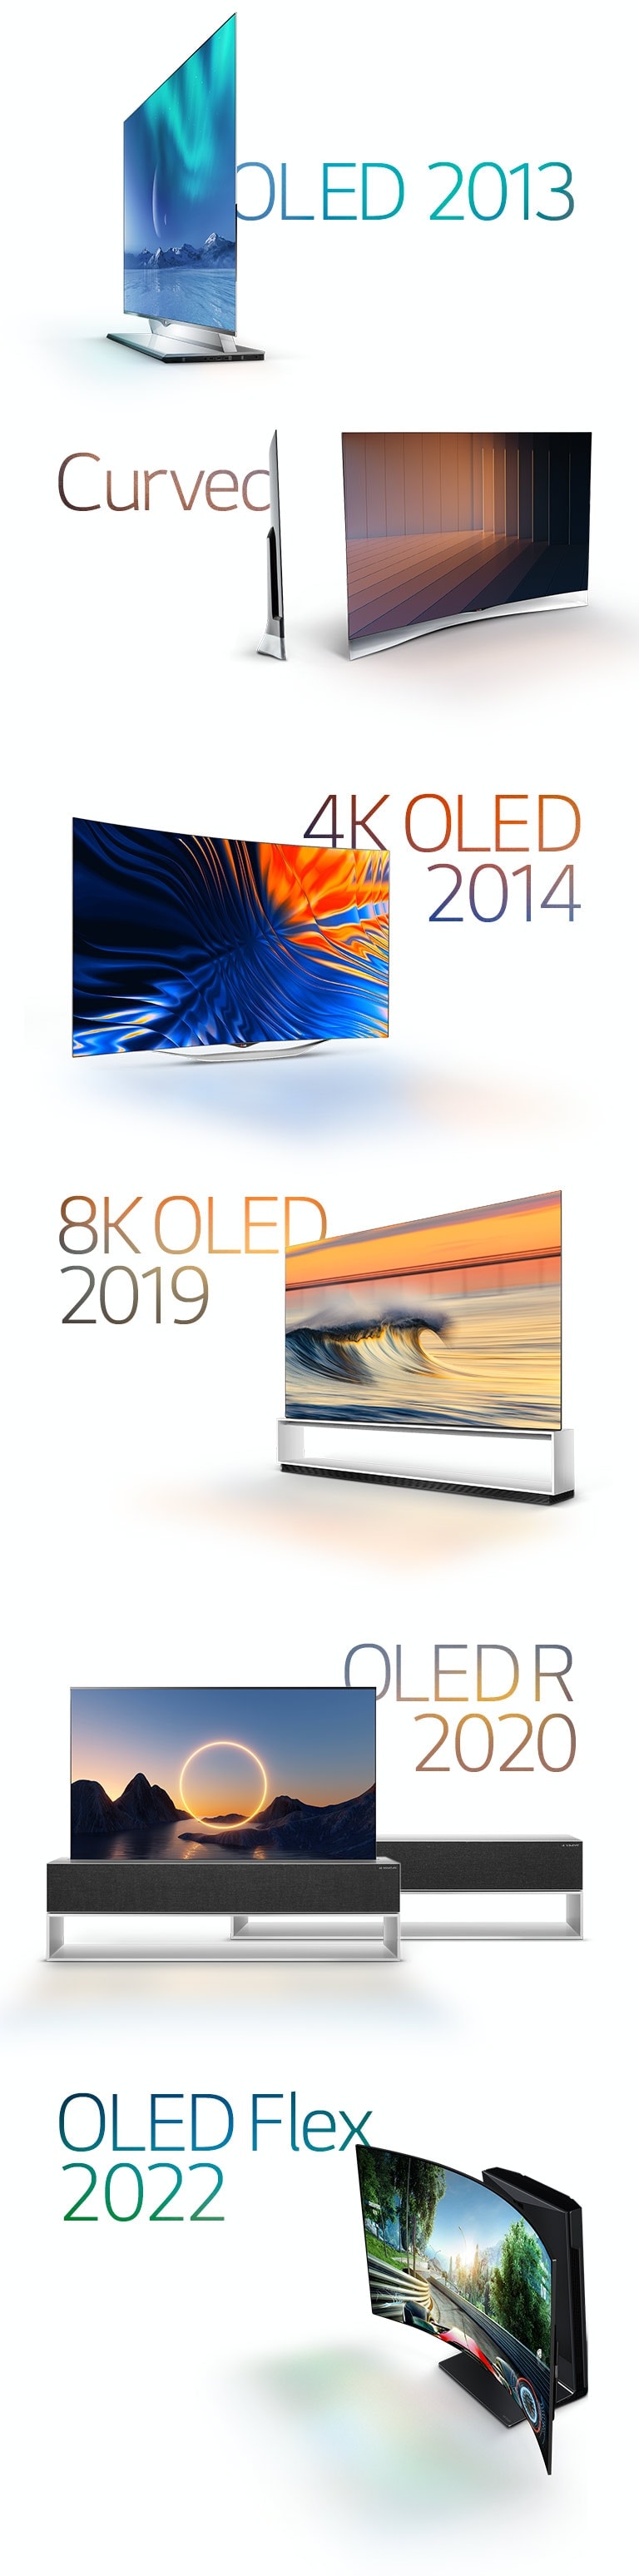 Öne çıkan LG OLED'lerin görüntüleri: 2013'te kavisli OLED, 2014'te 4K OLED, 2019'da 8K OLED, 2020'de kıvrılabilir OLED ve 2022'de LG OLED Flex.